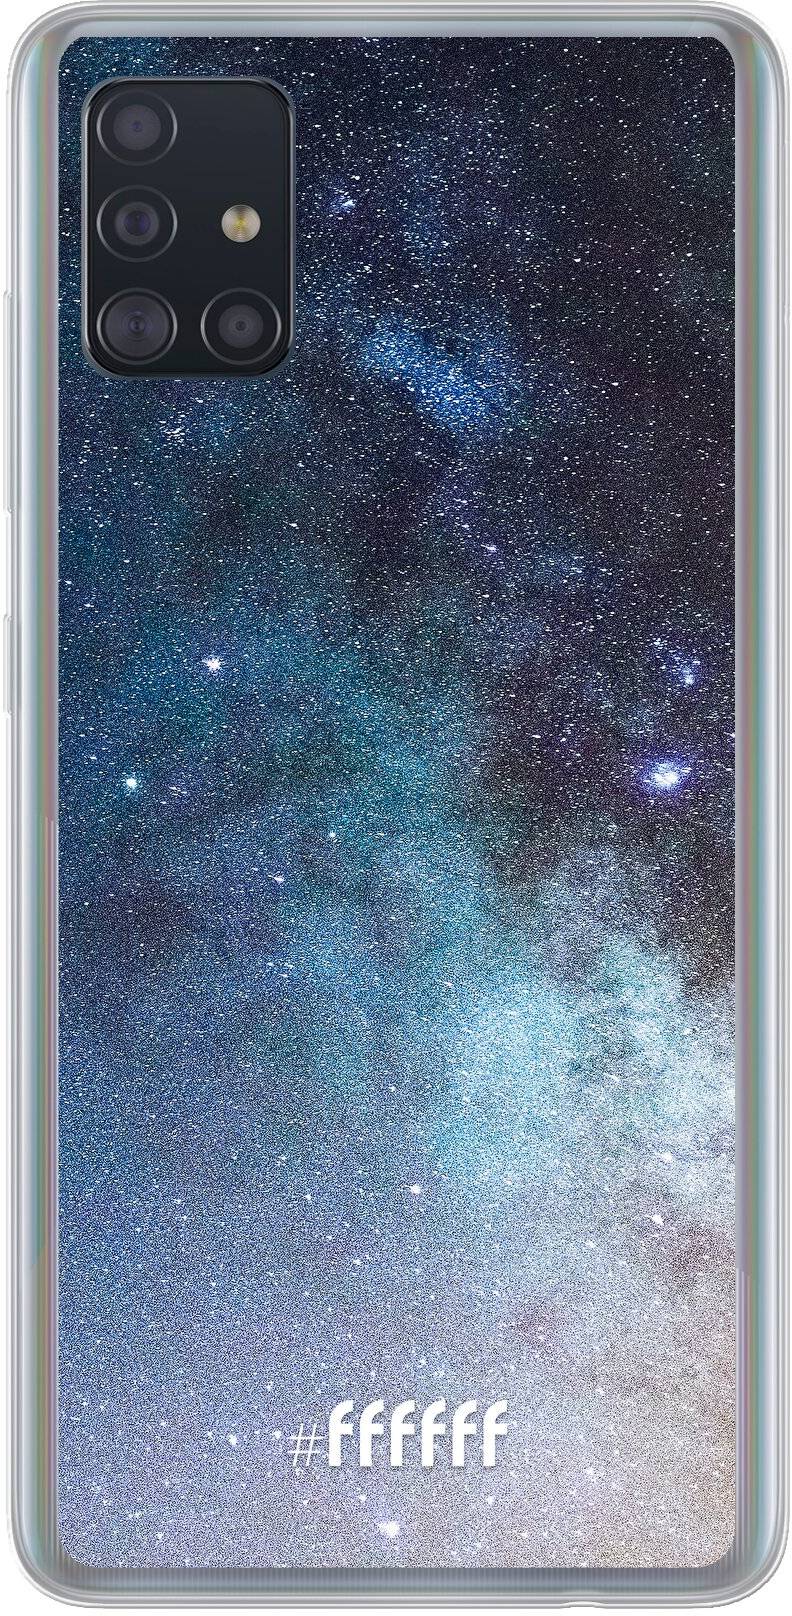 Milky Way Galaxy A51